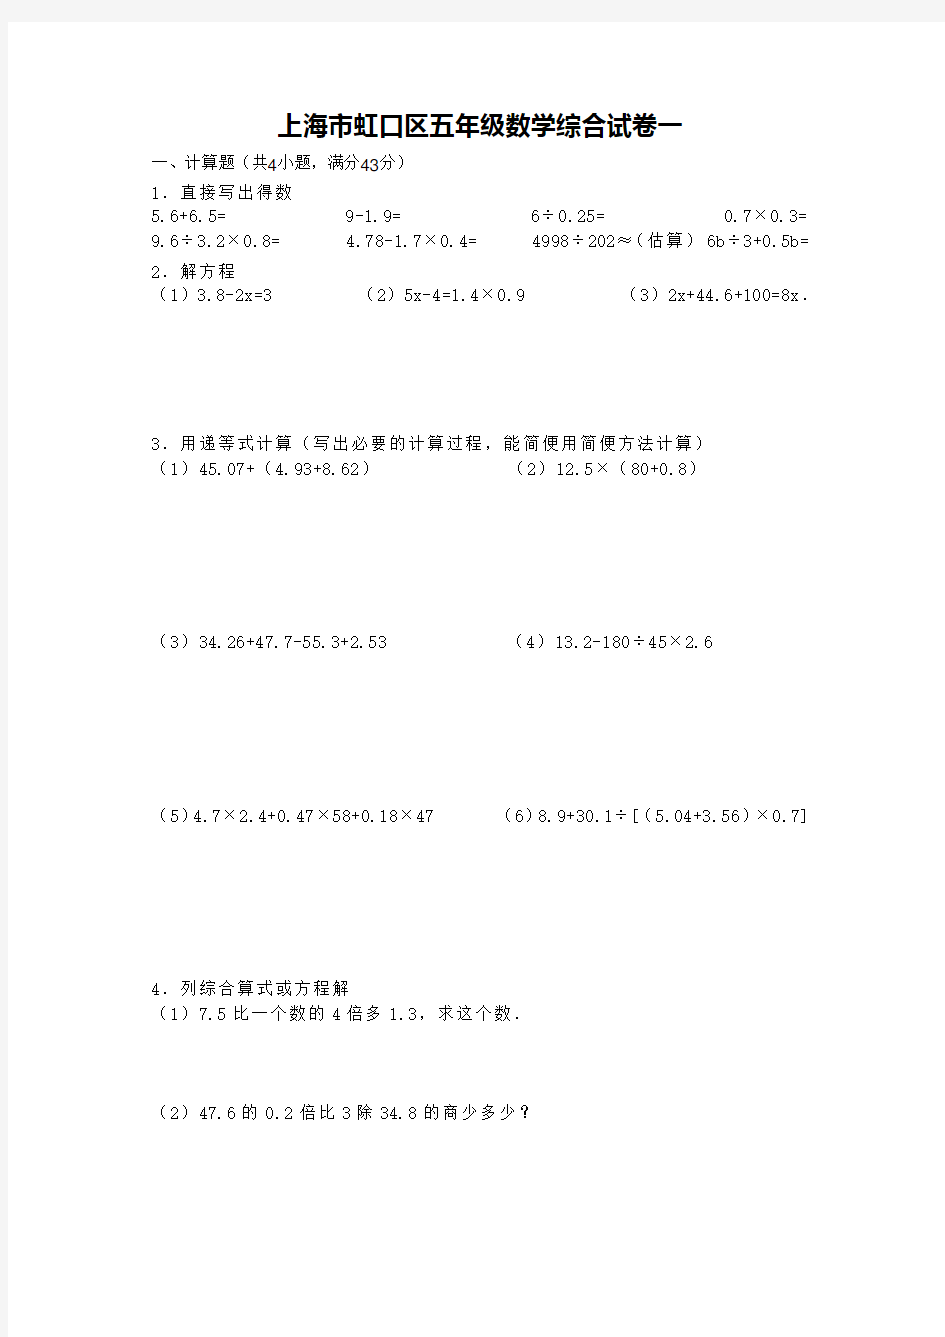 上海市五年级数学综合试卷一(小升初毕业考)